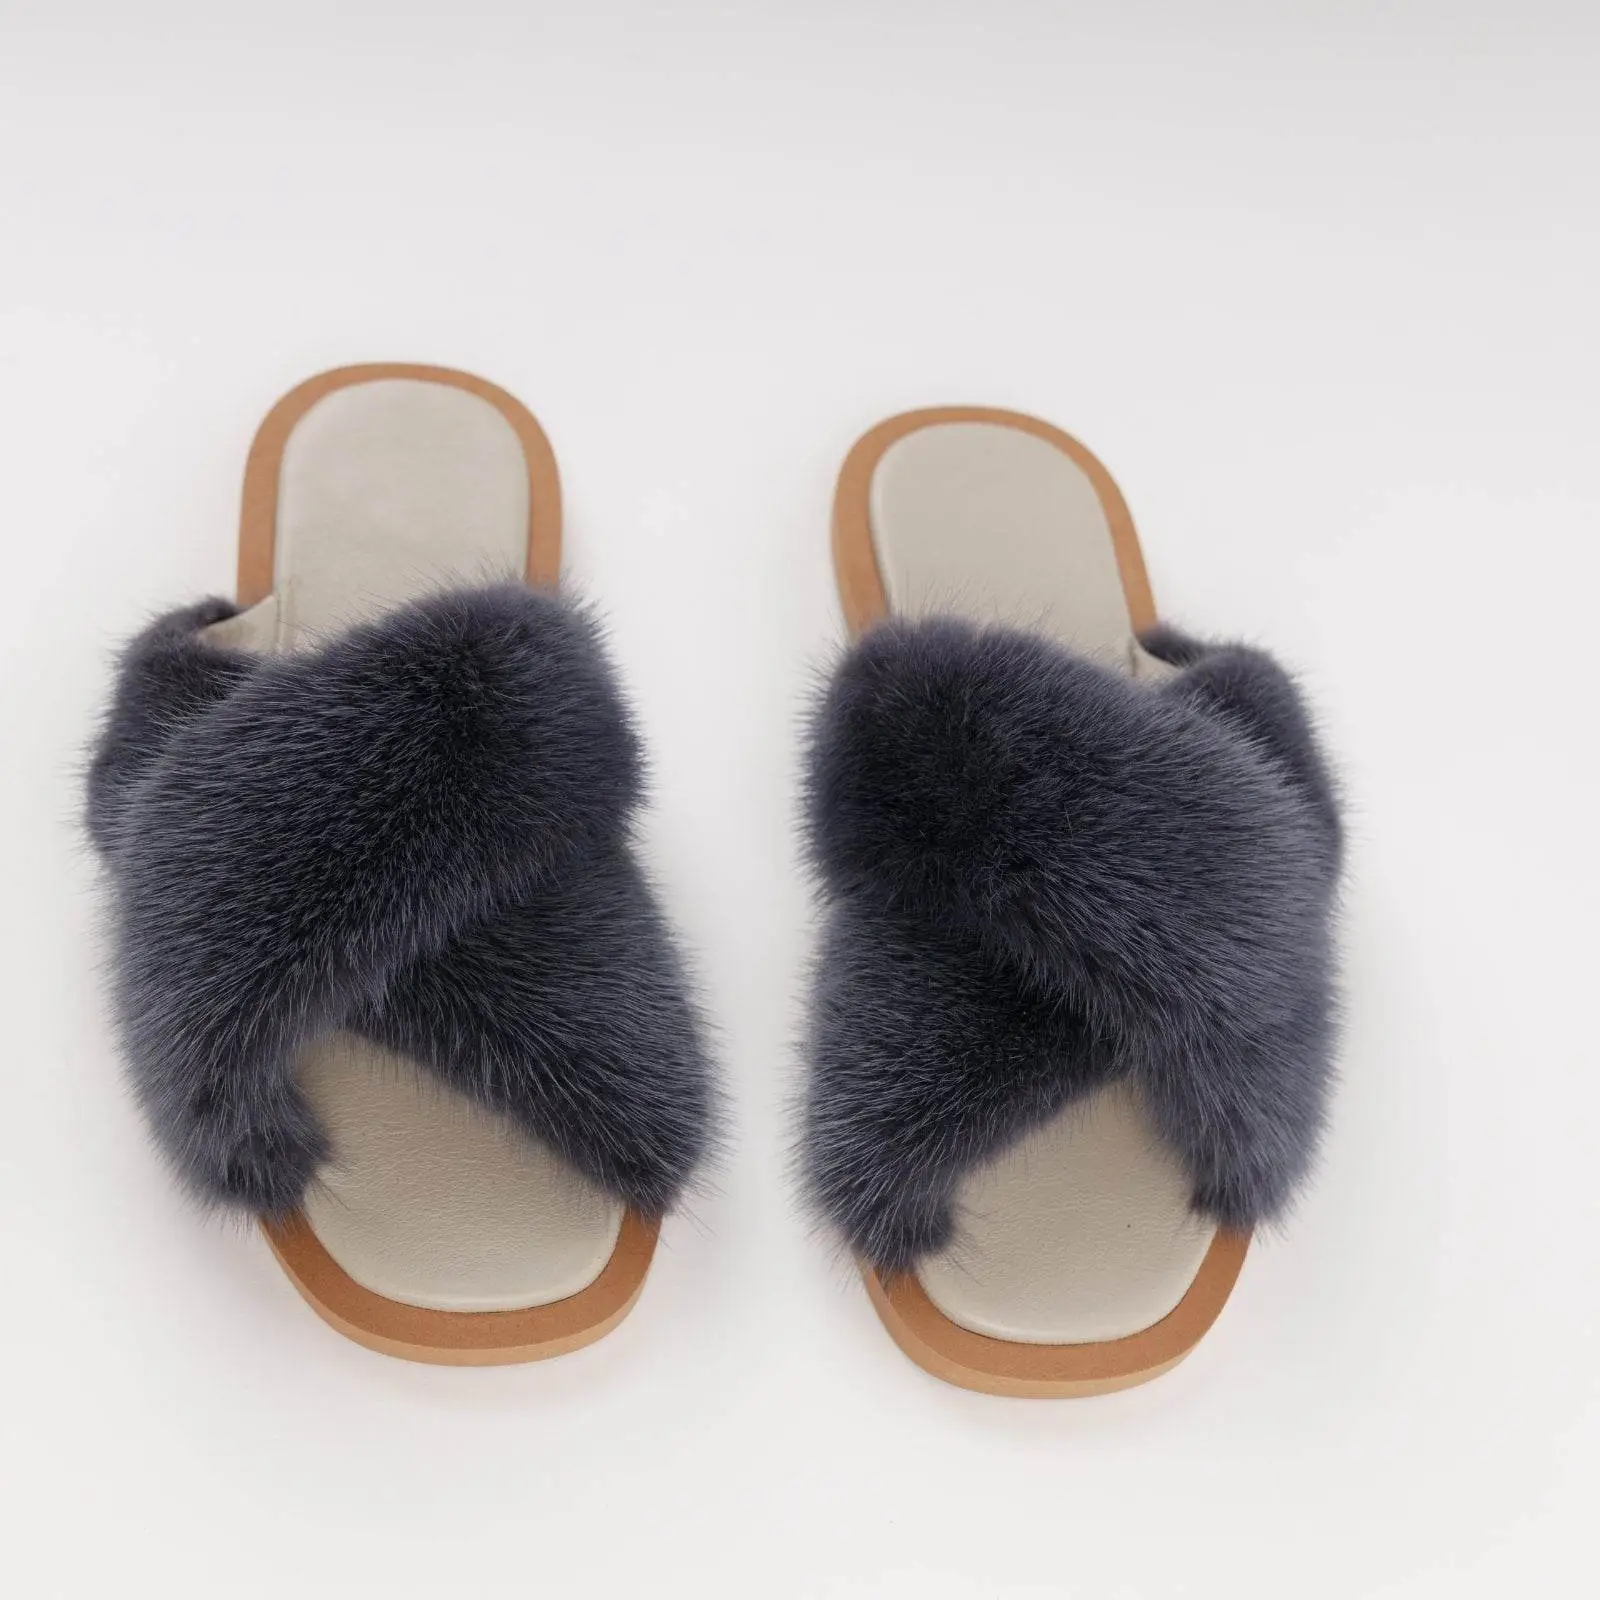 Braided Pattern Mink Sandals - Baby Blue Yellow - velurboutique